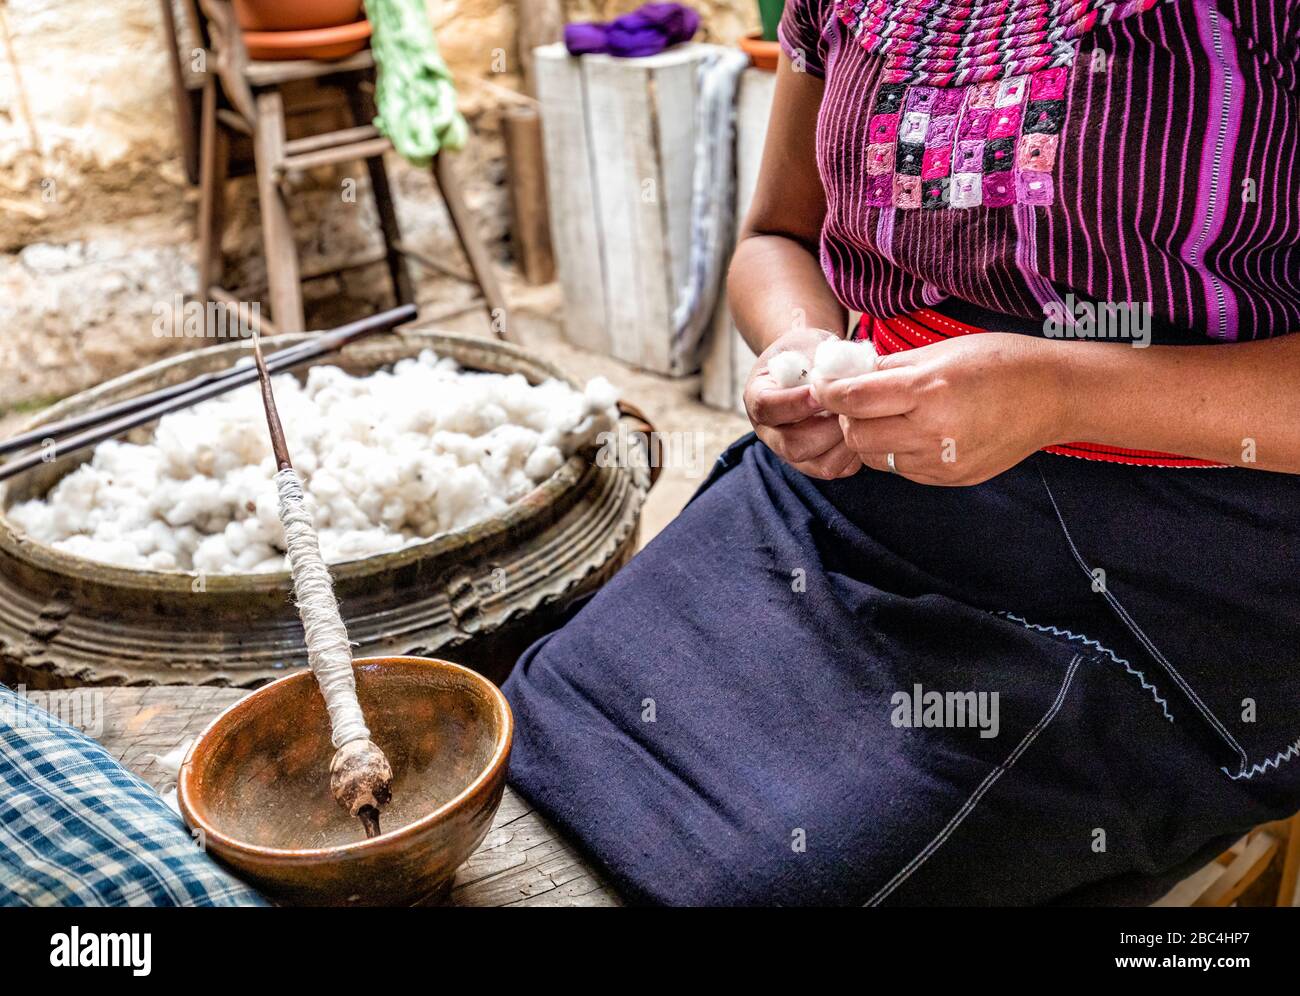 El algodón y el huso utilizado en este proceso artesanal en una cooperativa de tejeduría en San Juan a orillas del Lago Atitlán, Guatemala. Foto de stock